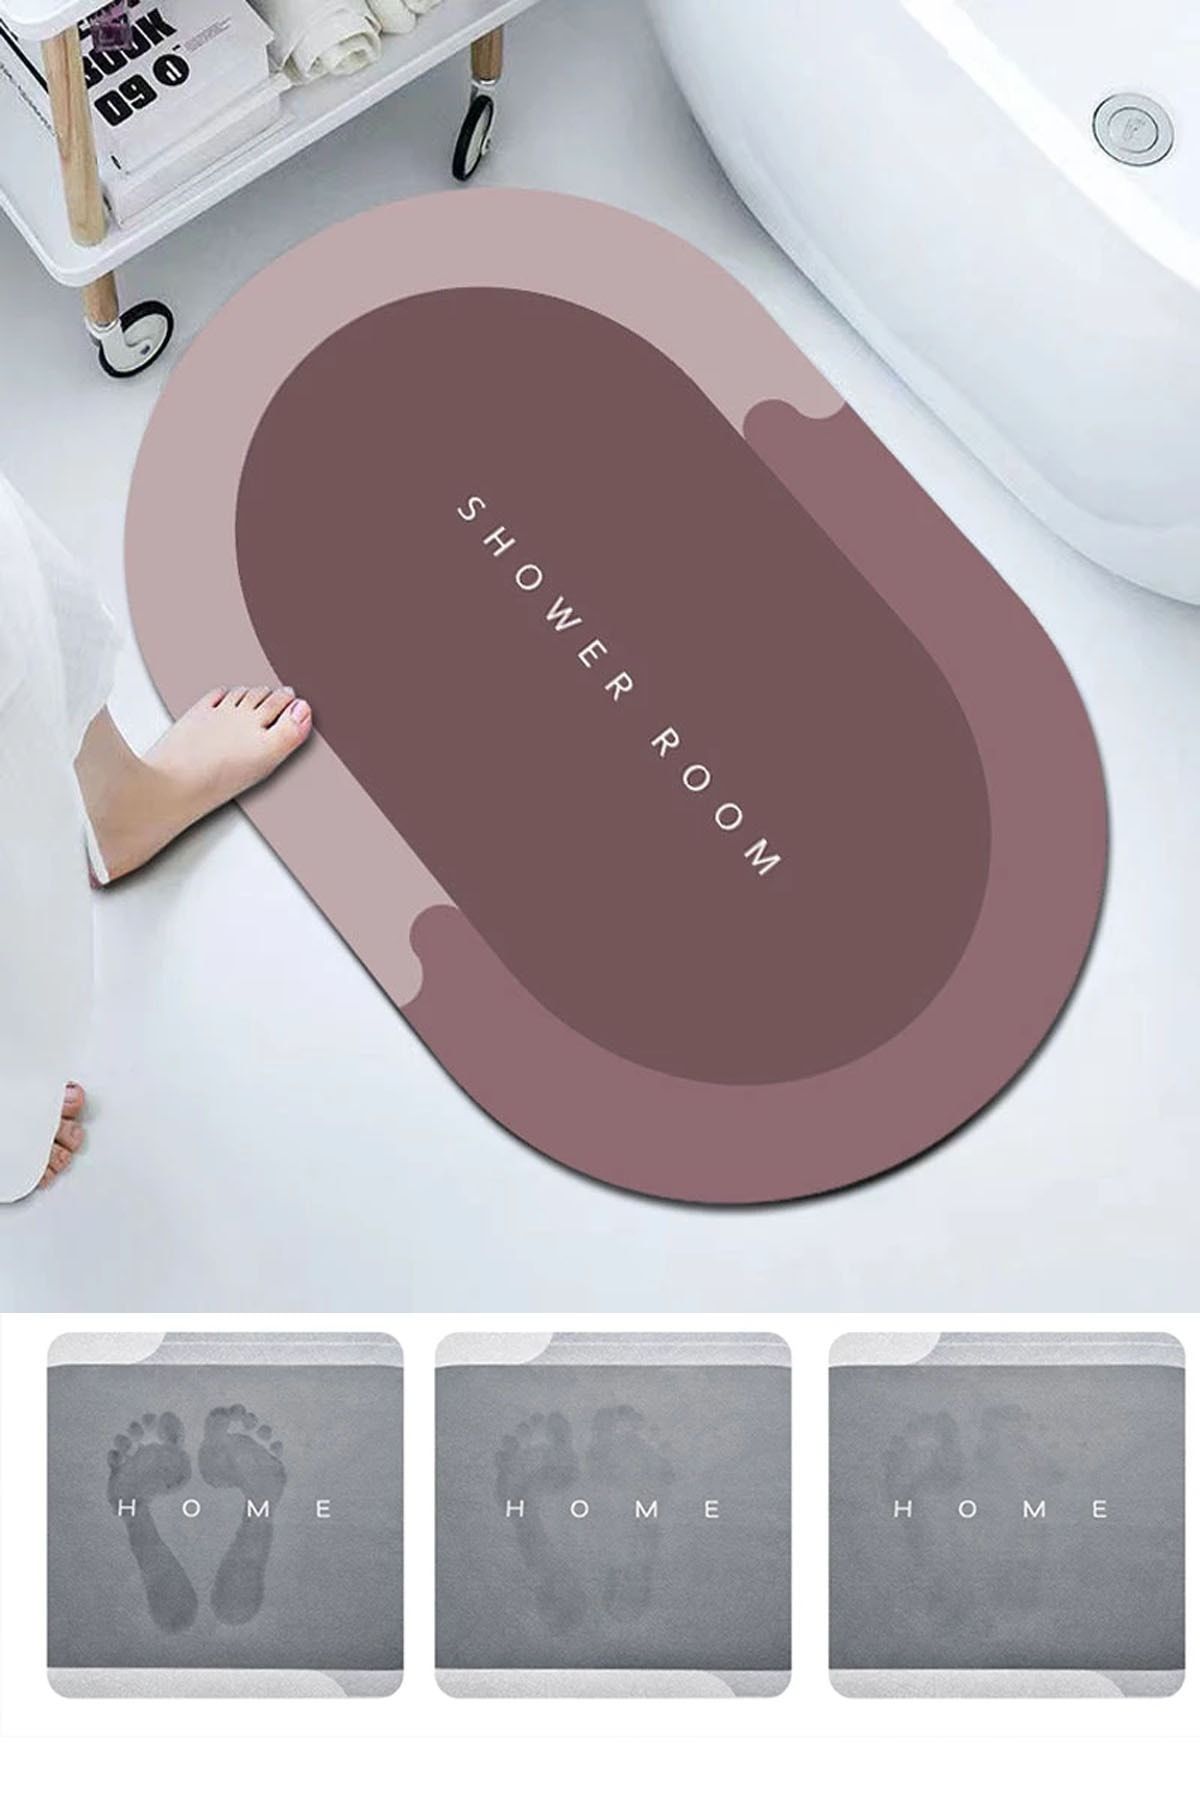 FİTHOME Diatom 3,5 Mm 40x60 Kare Süper Su Emici Banyo Paspası Diyatom Abdest Paspası